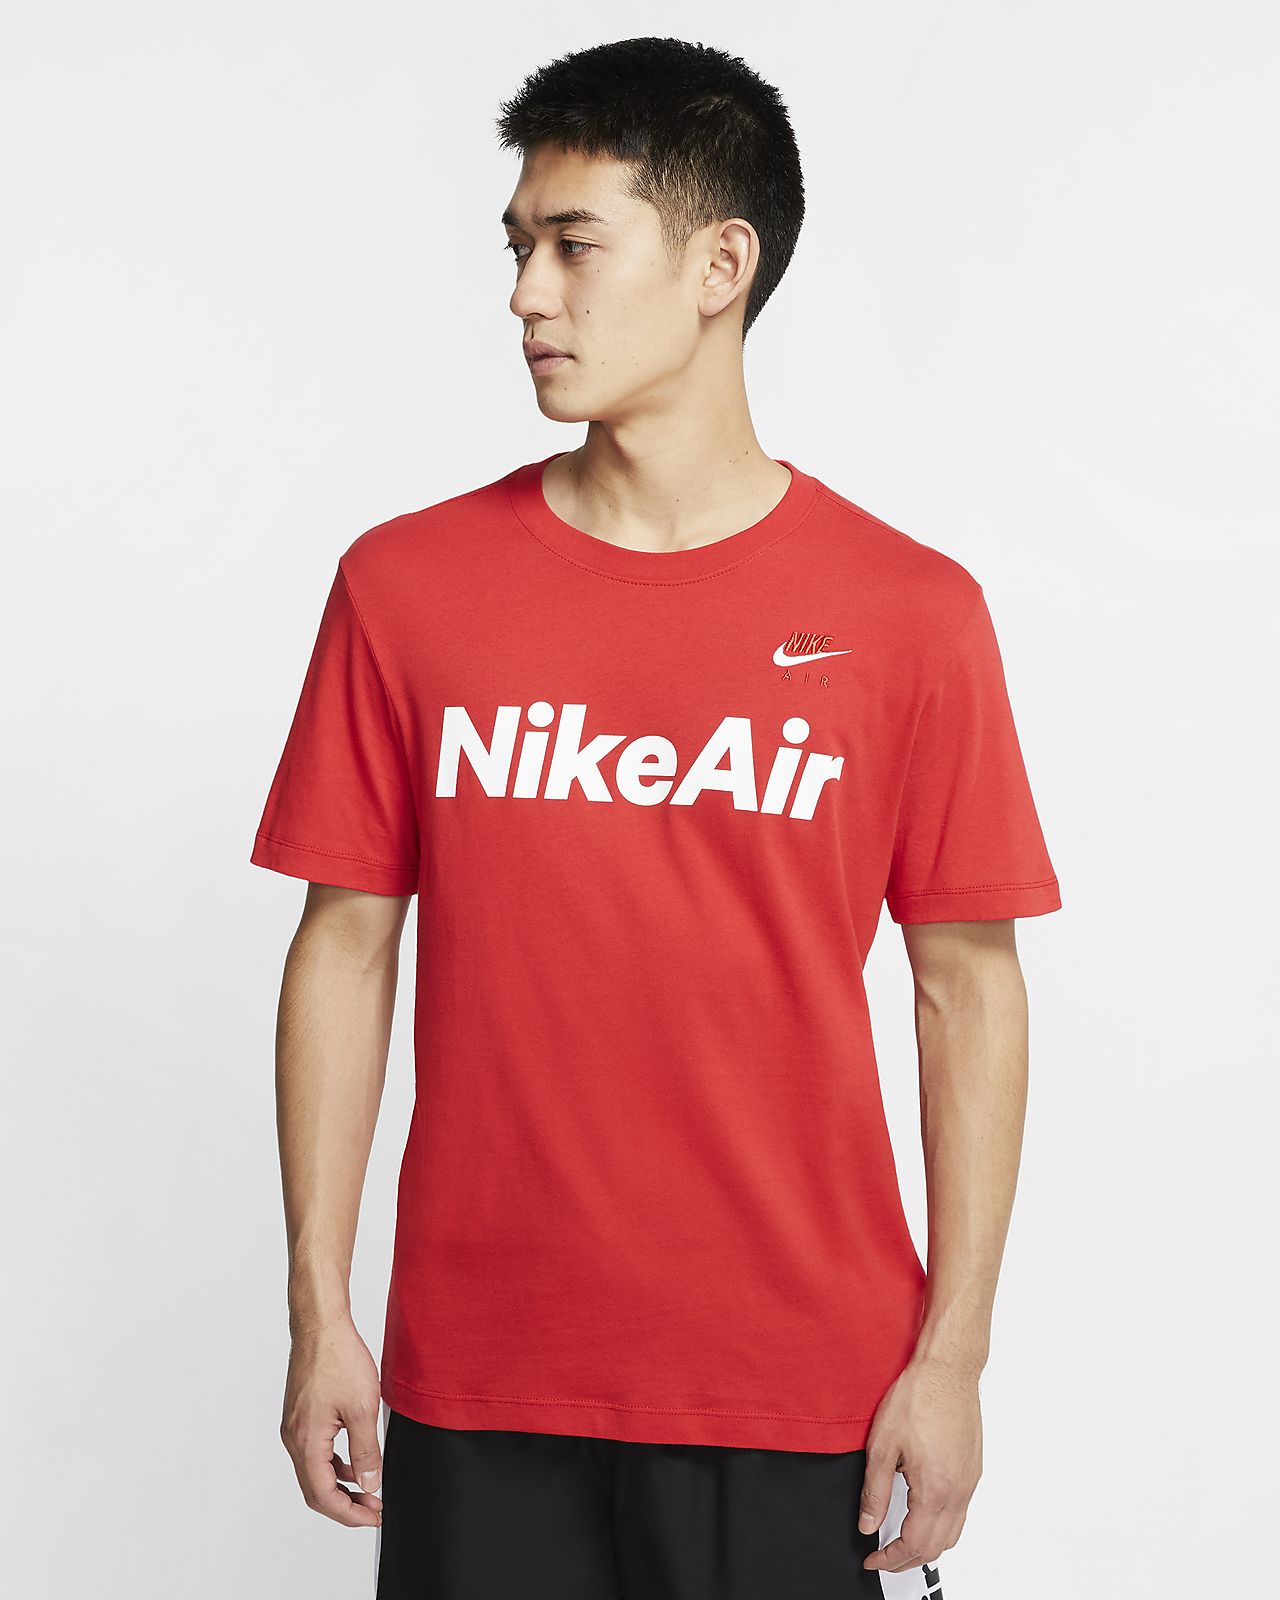 Nike Air Anime Shirt : Anime Nike Air Force 1 Men custom Nikes custom